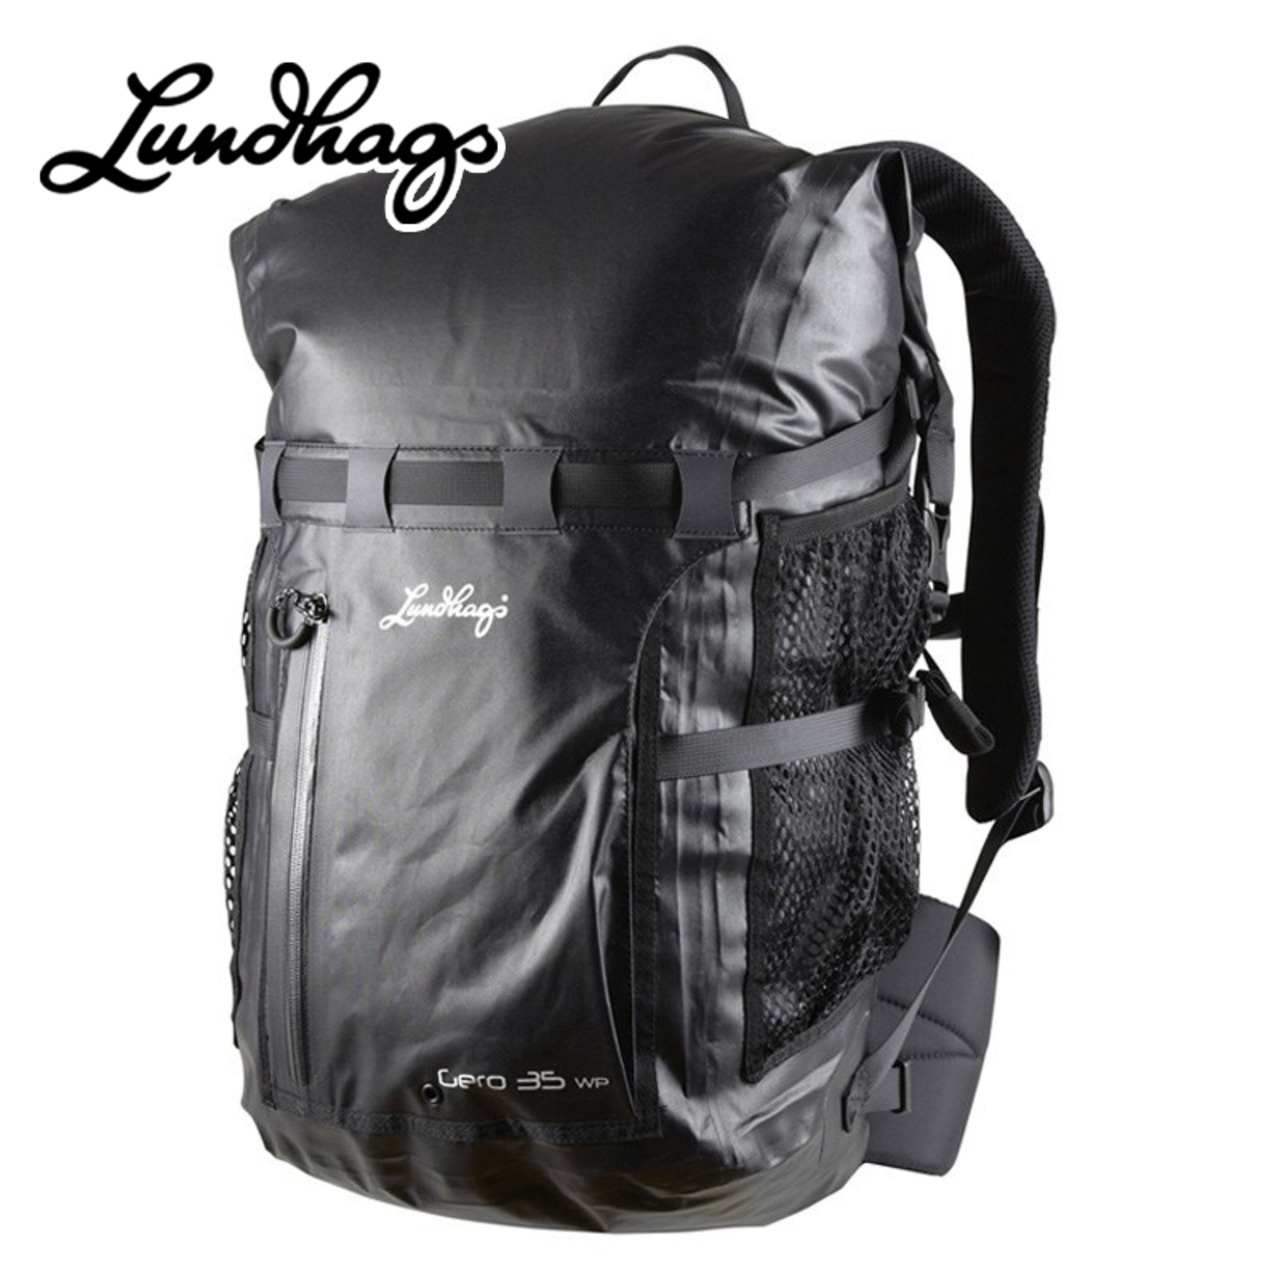 Lundhags 北欧生まれの 高機能 防水 バックパック Gero 35 WP リュック デイパック 35L 丈夫で軽量 リサイクル素材 バッグ